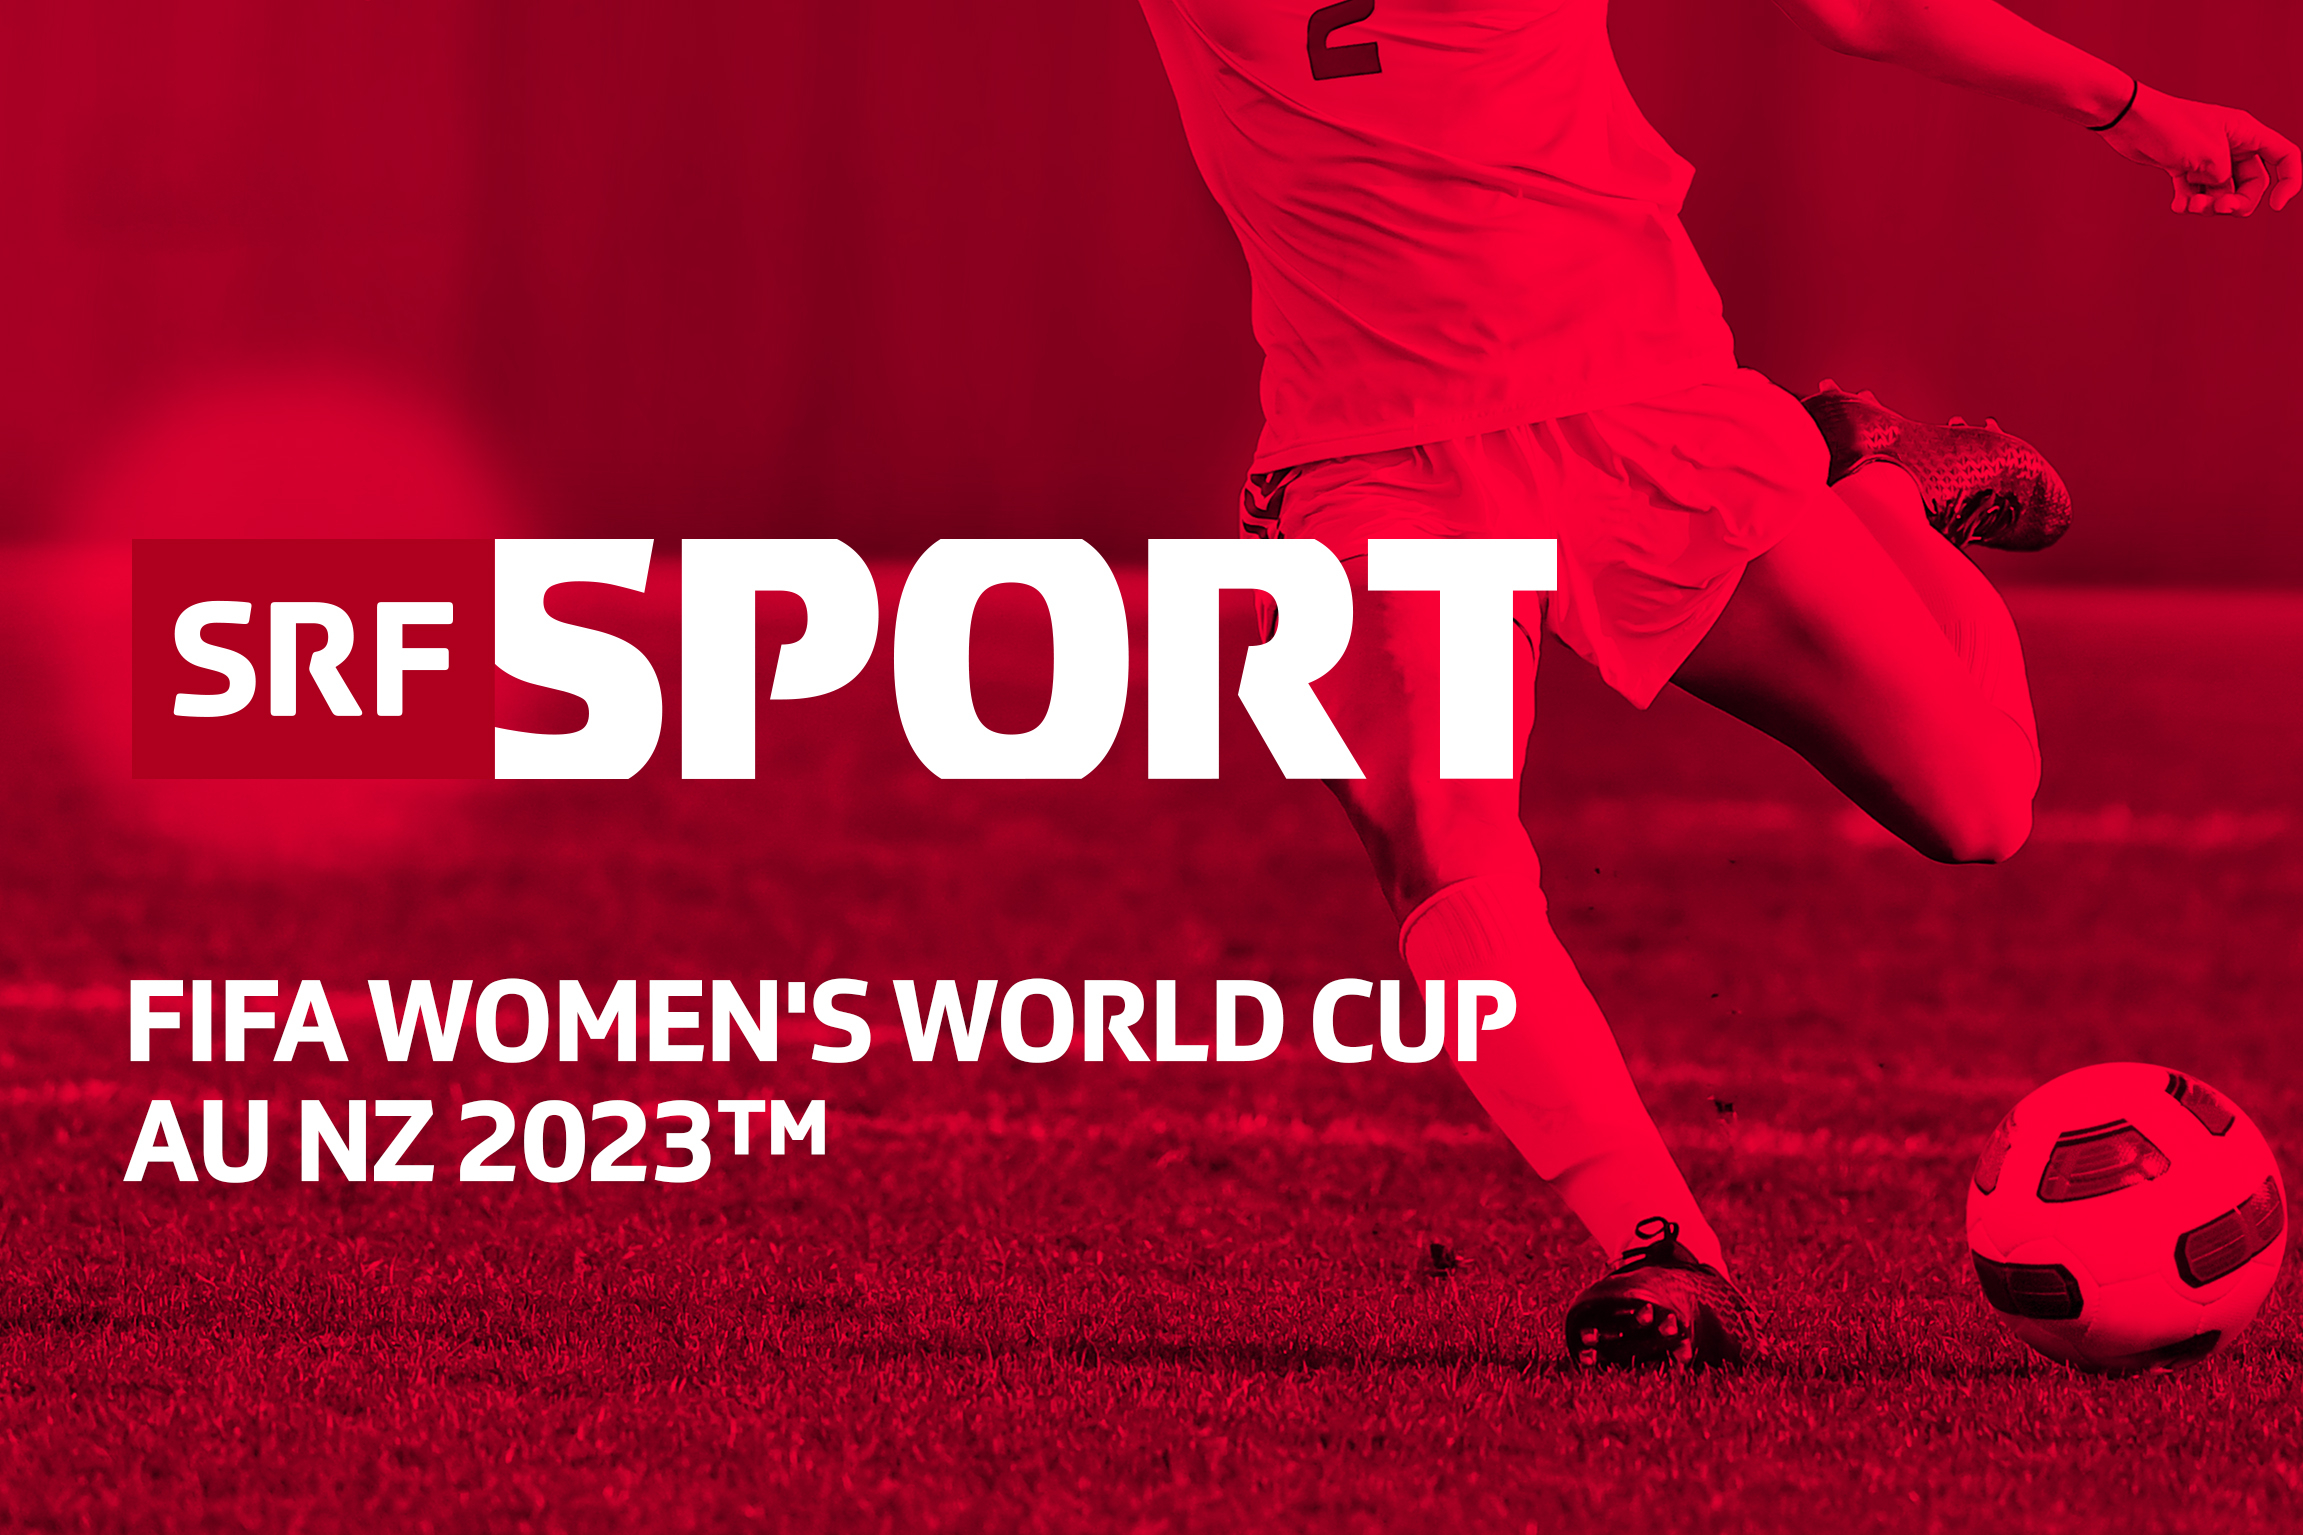 SRF zeigt alle Spiele des FIFA Womens World Cup 2023 live - Medienportal